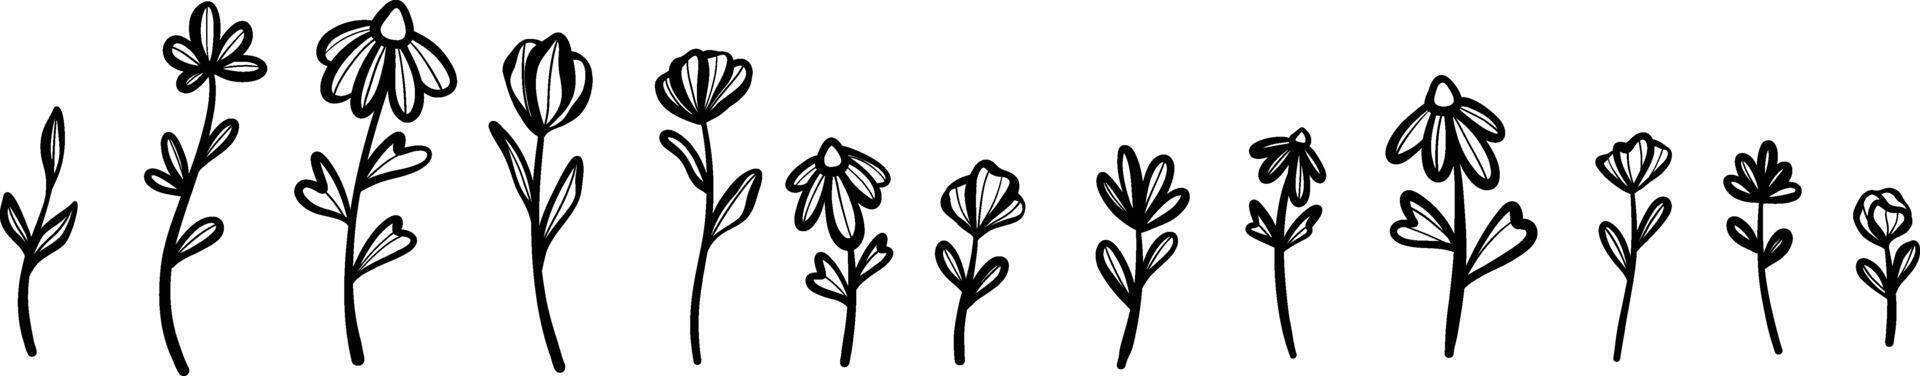 flor ilustración colocar, planta acortar arte, floral garabatear conjunto aislado primavera gráfico elementos vector